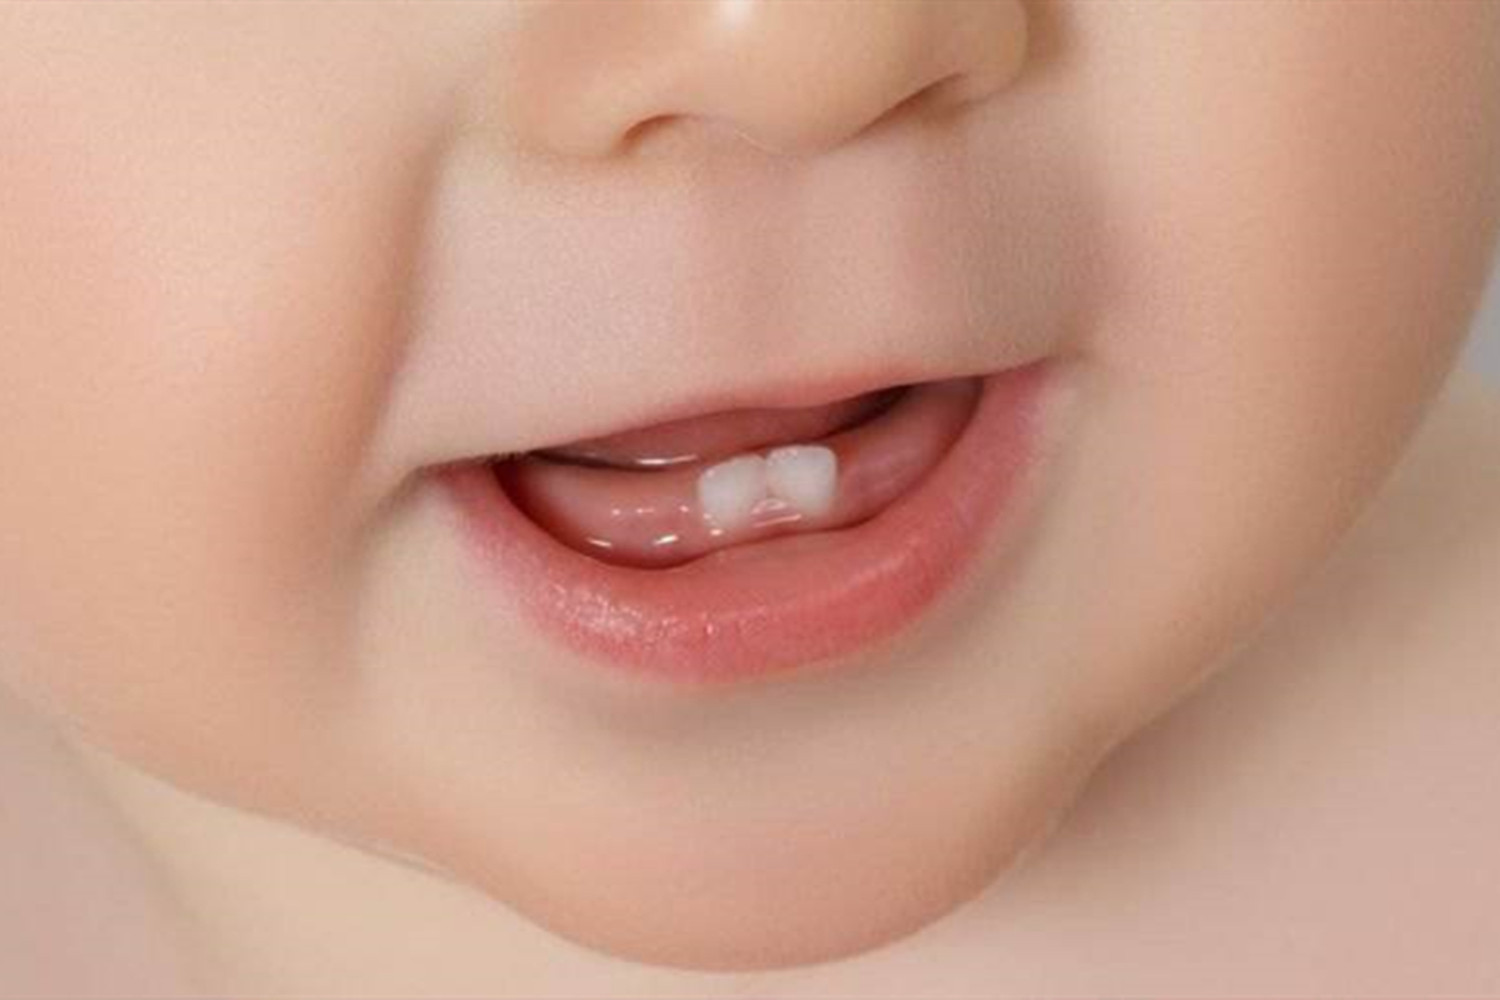 宝宝几个月大应该开始刷牙?若晚于此年龄,对牙齿健康不利